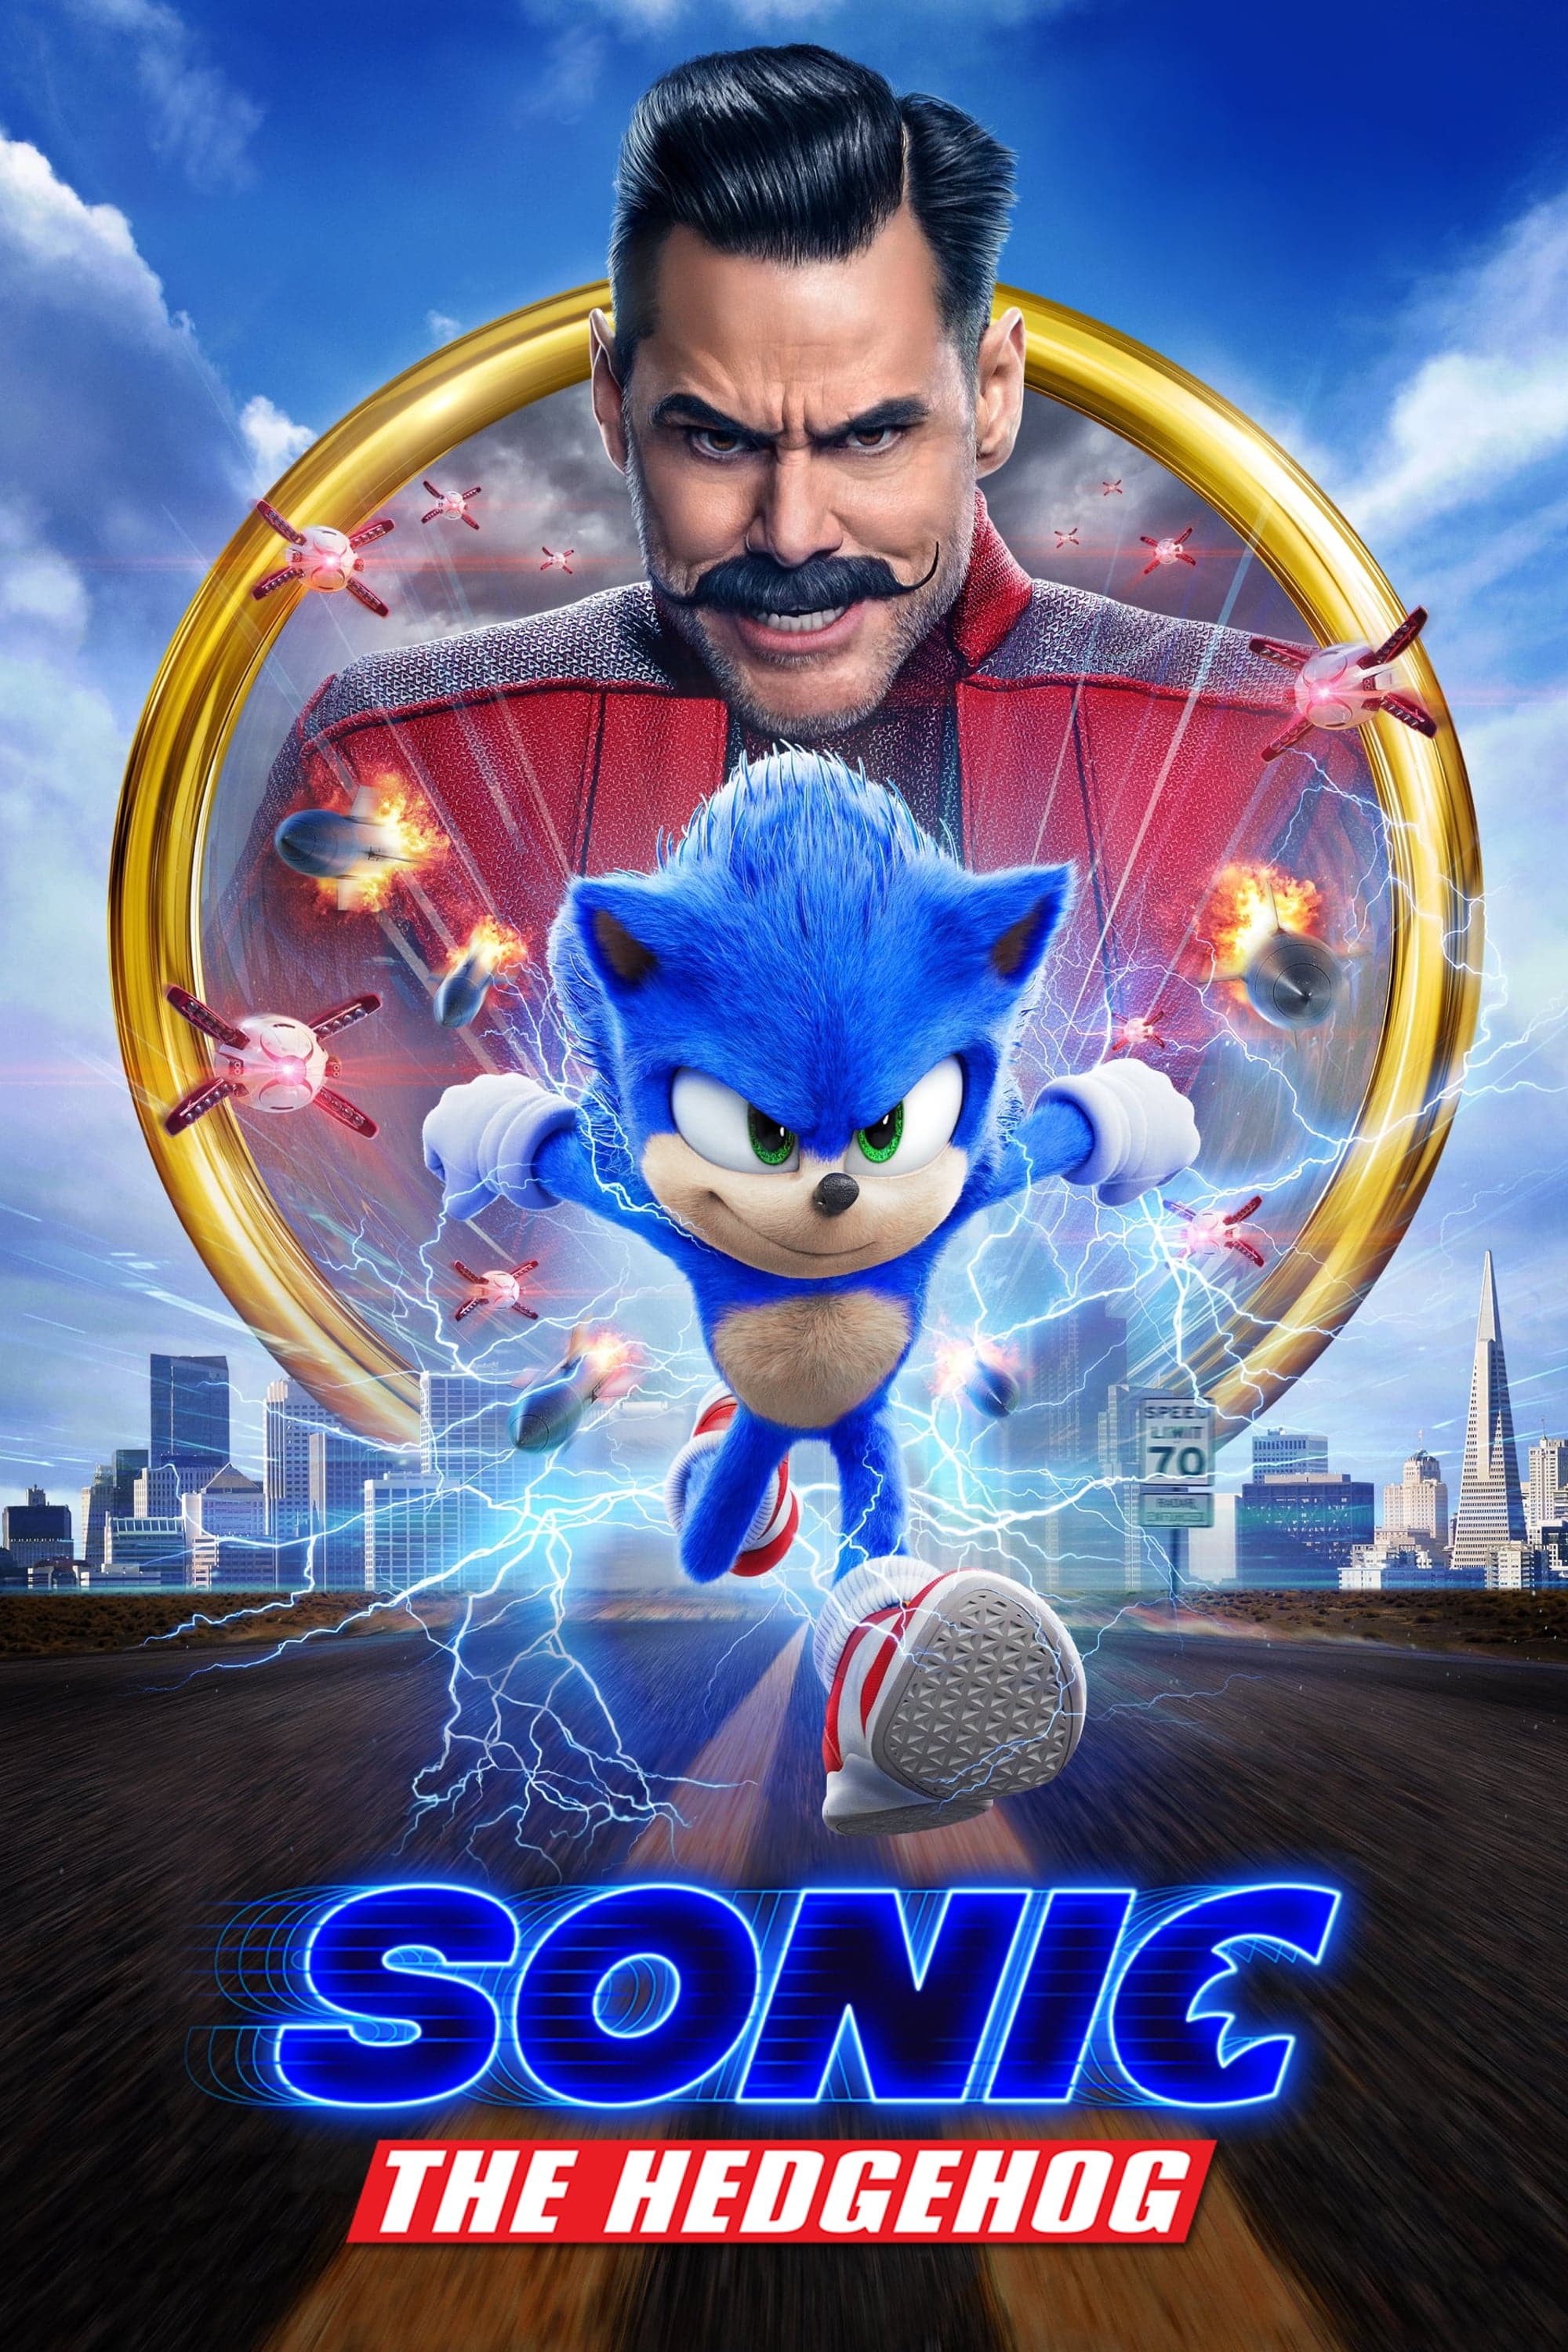 Plakat von "Sonic the Hedgehog"